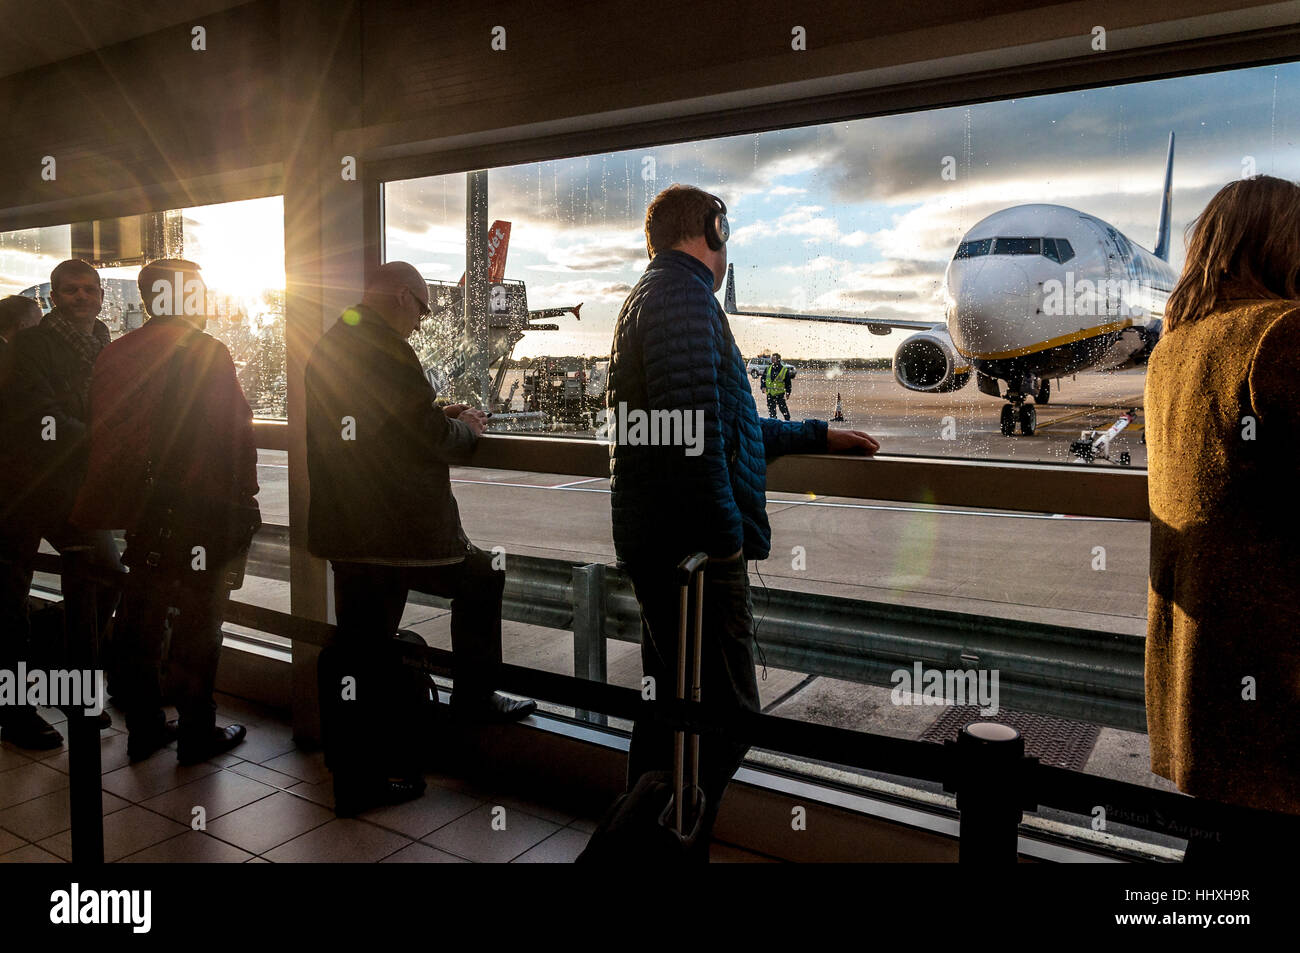 Passengers waiting to board aircraft at Bristol Airport, England, UK Stock Photo